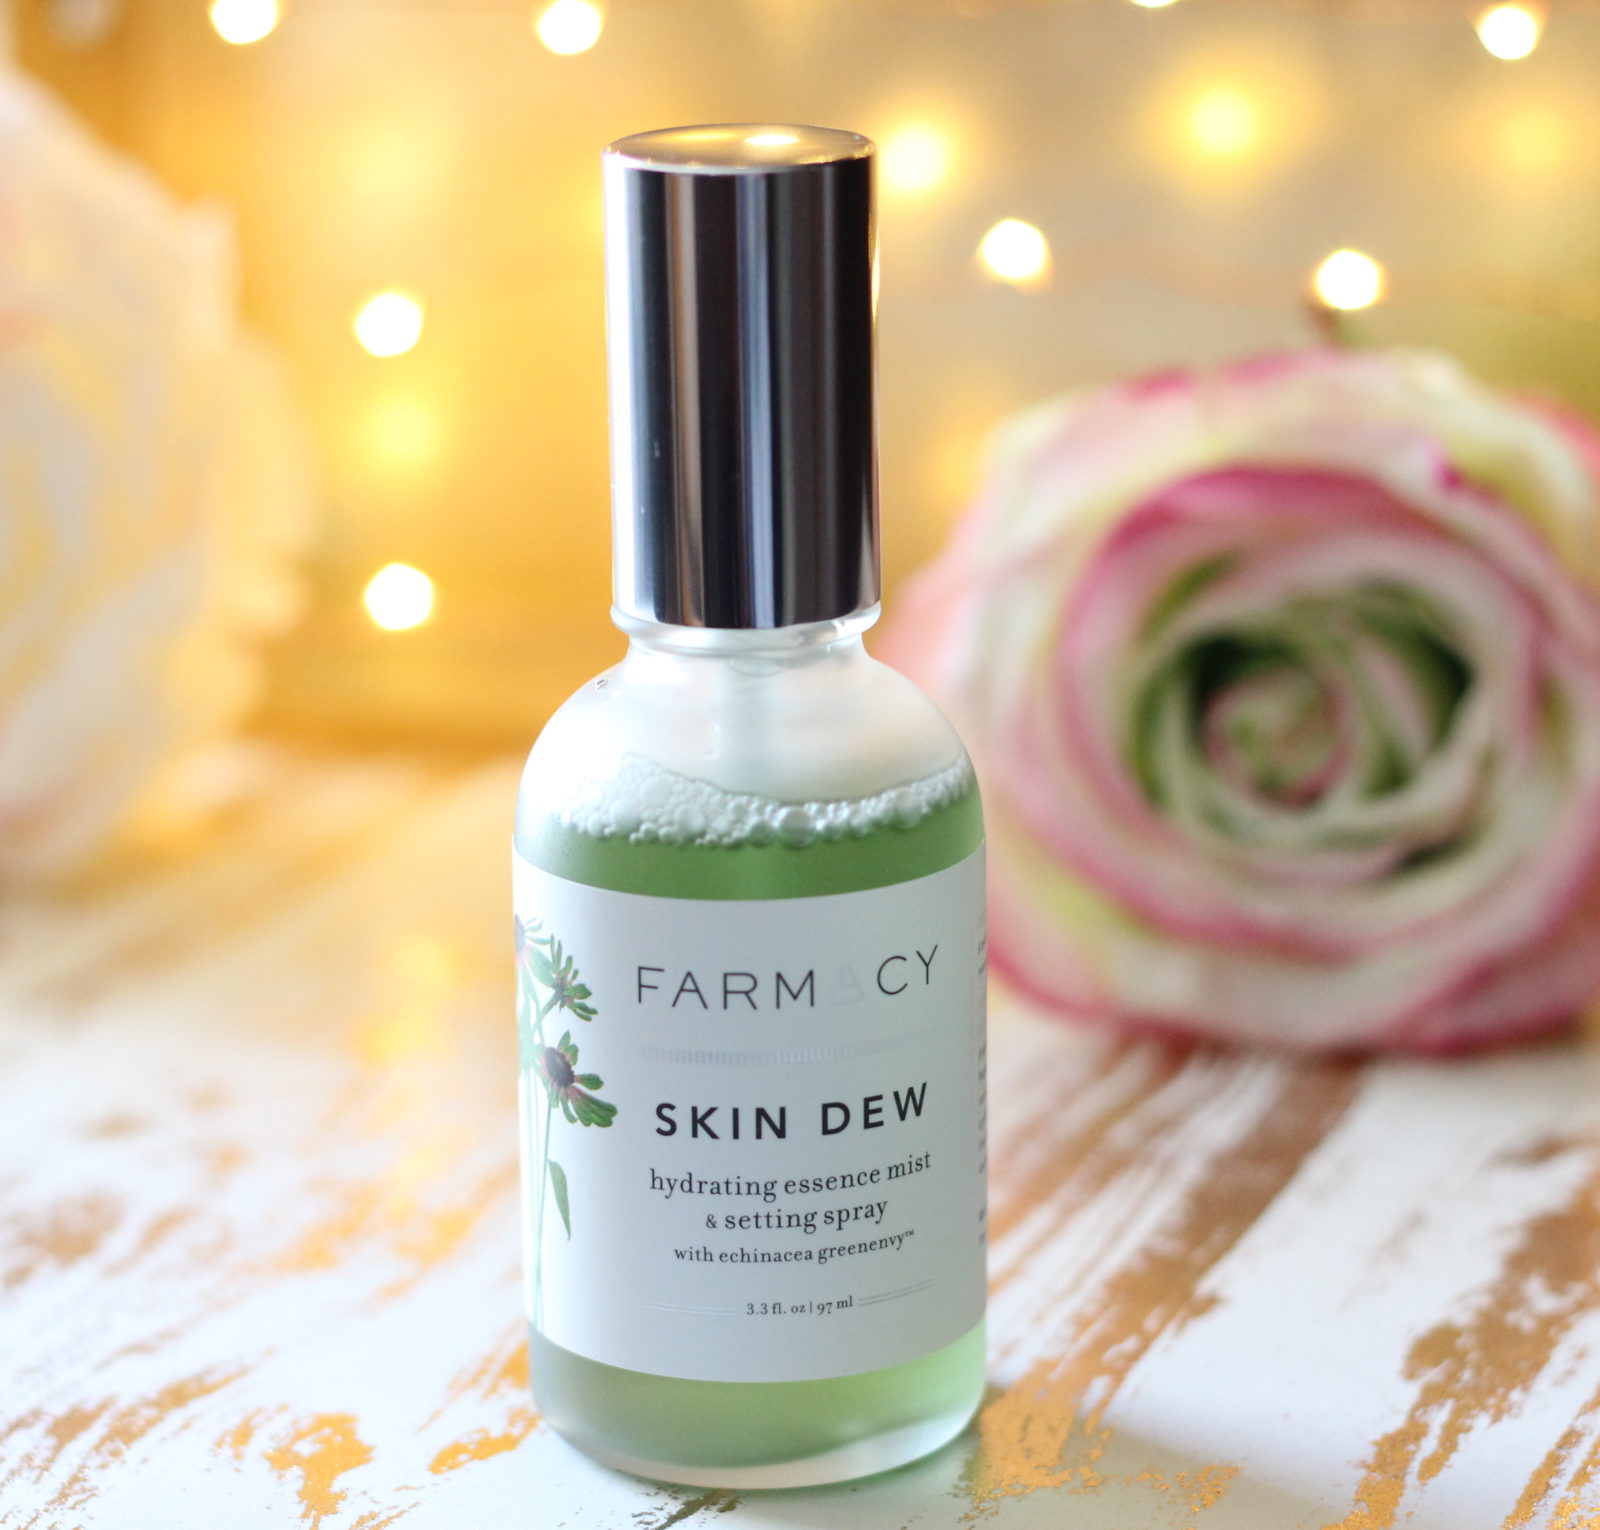 Review: Farmacy Skin Dew Hydrating Essence Mist & Setting Spray